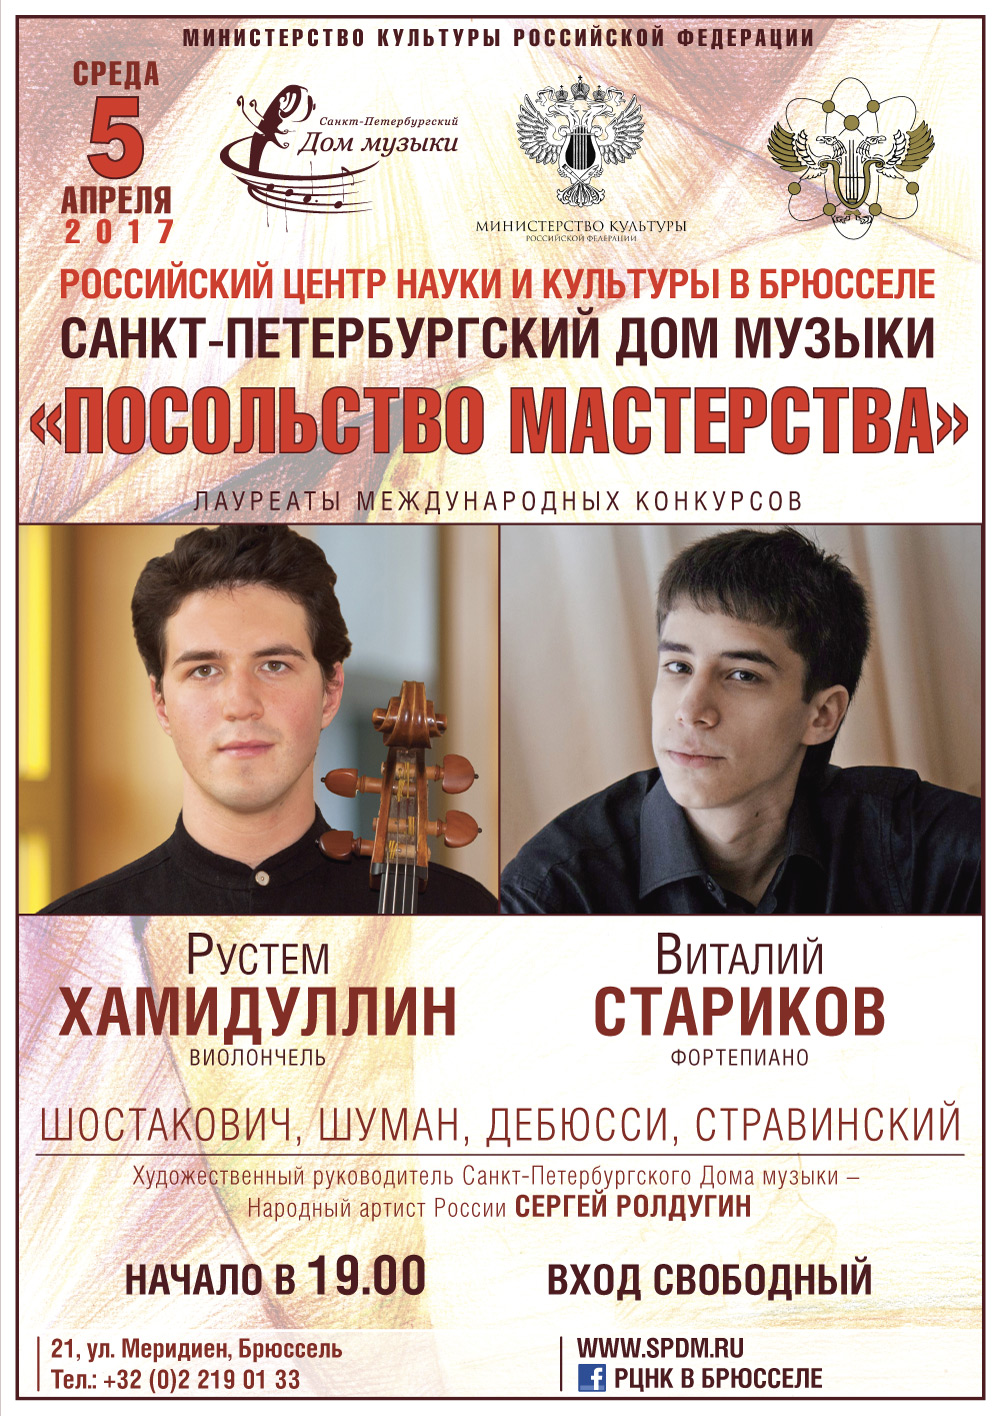 Посольство мастерства : Русем Хамидуллин, виолончель и Виталий Стариков, фортепиано.